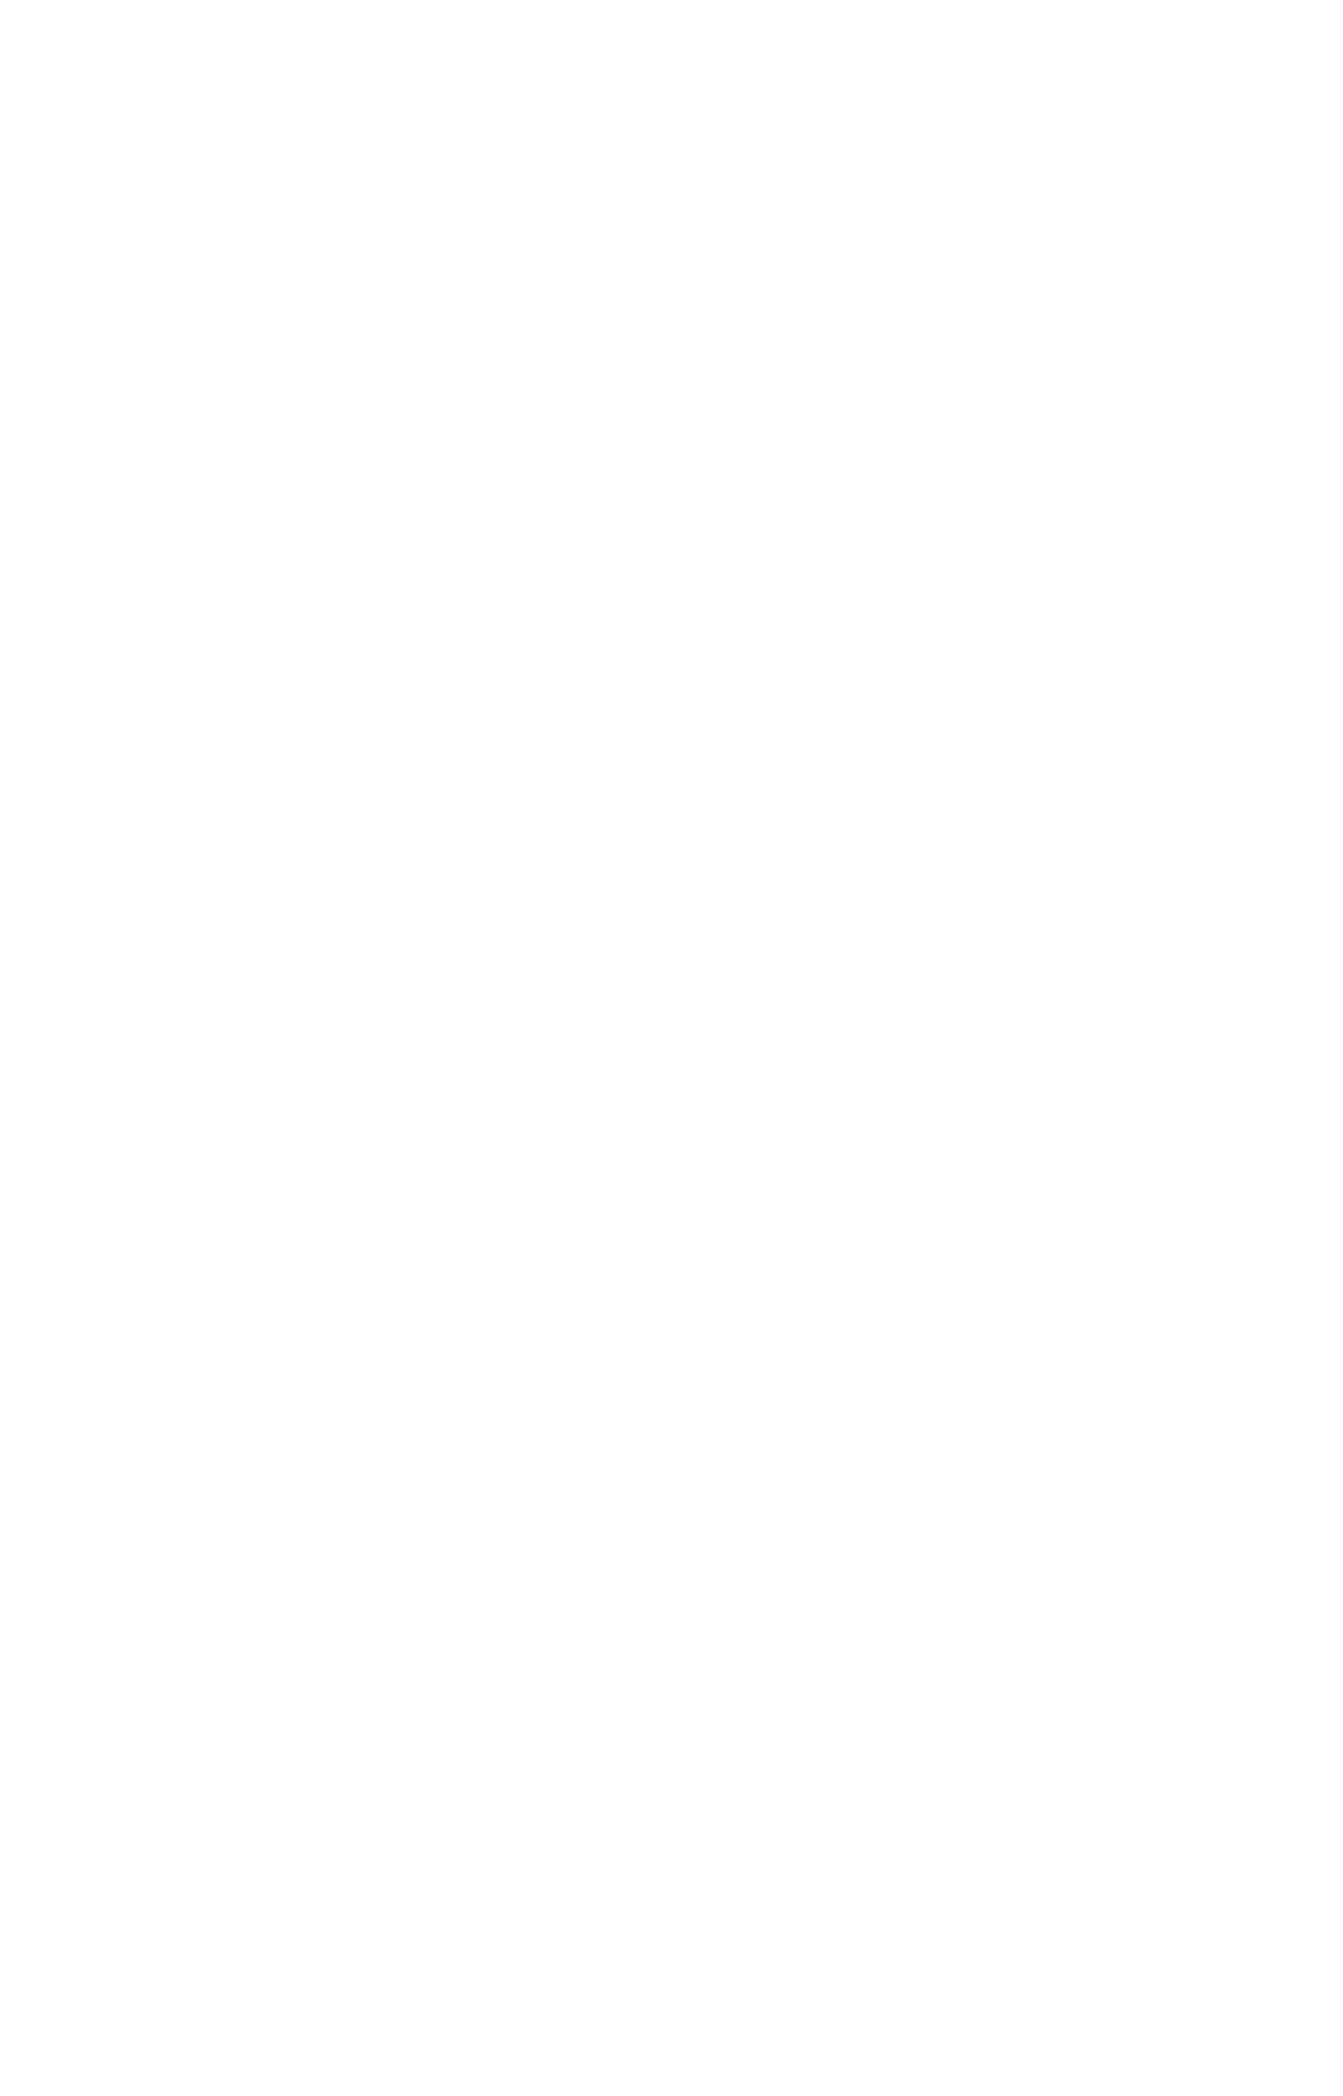 Café de Burcht